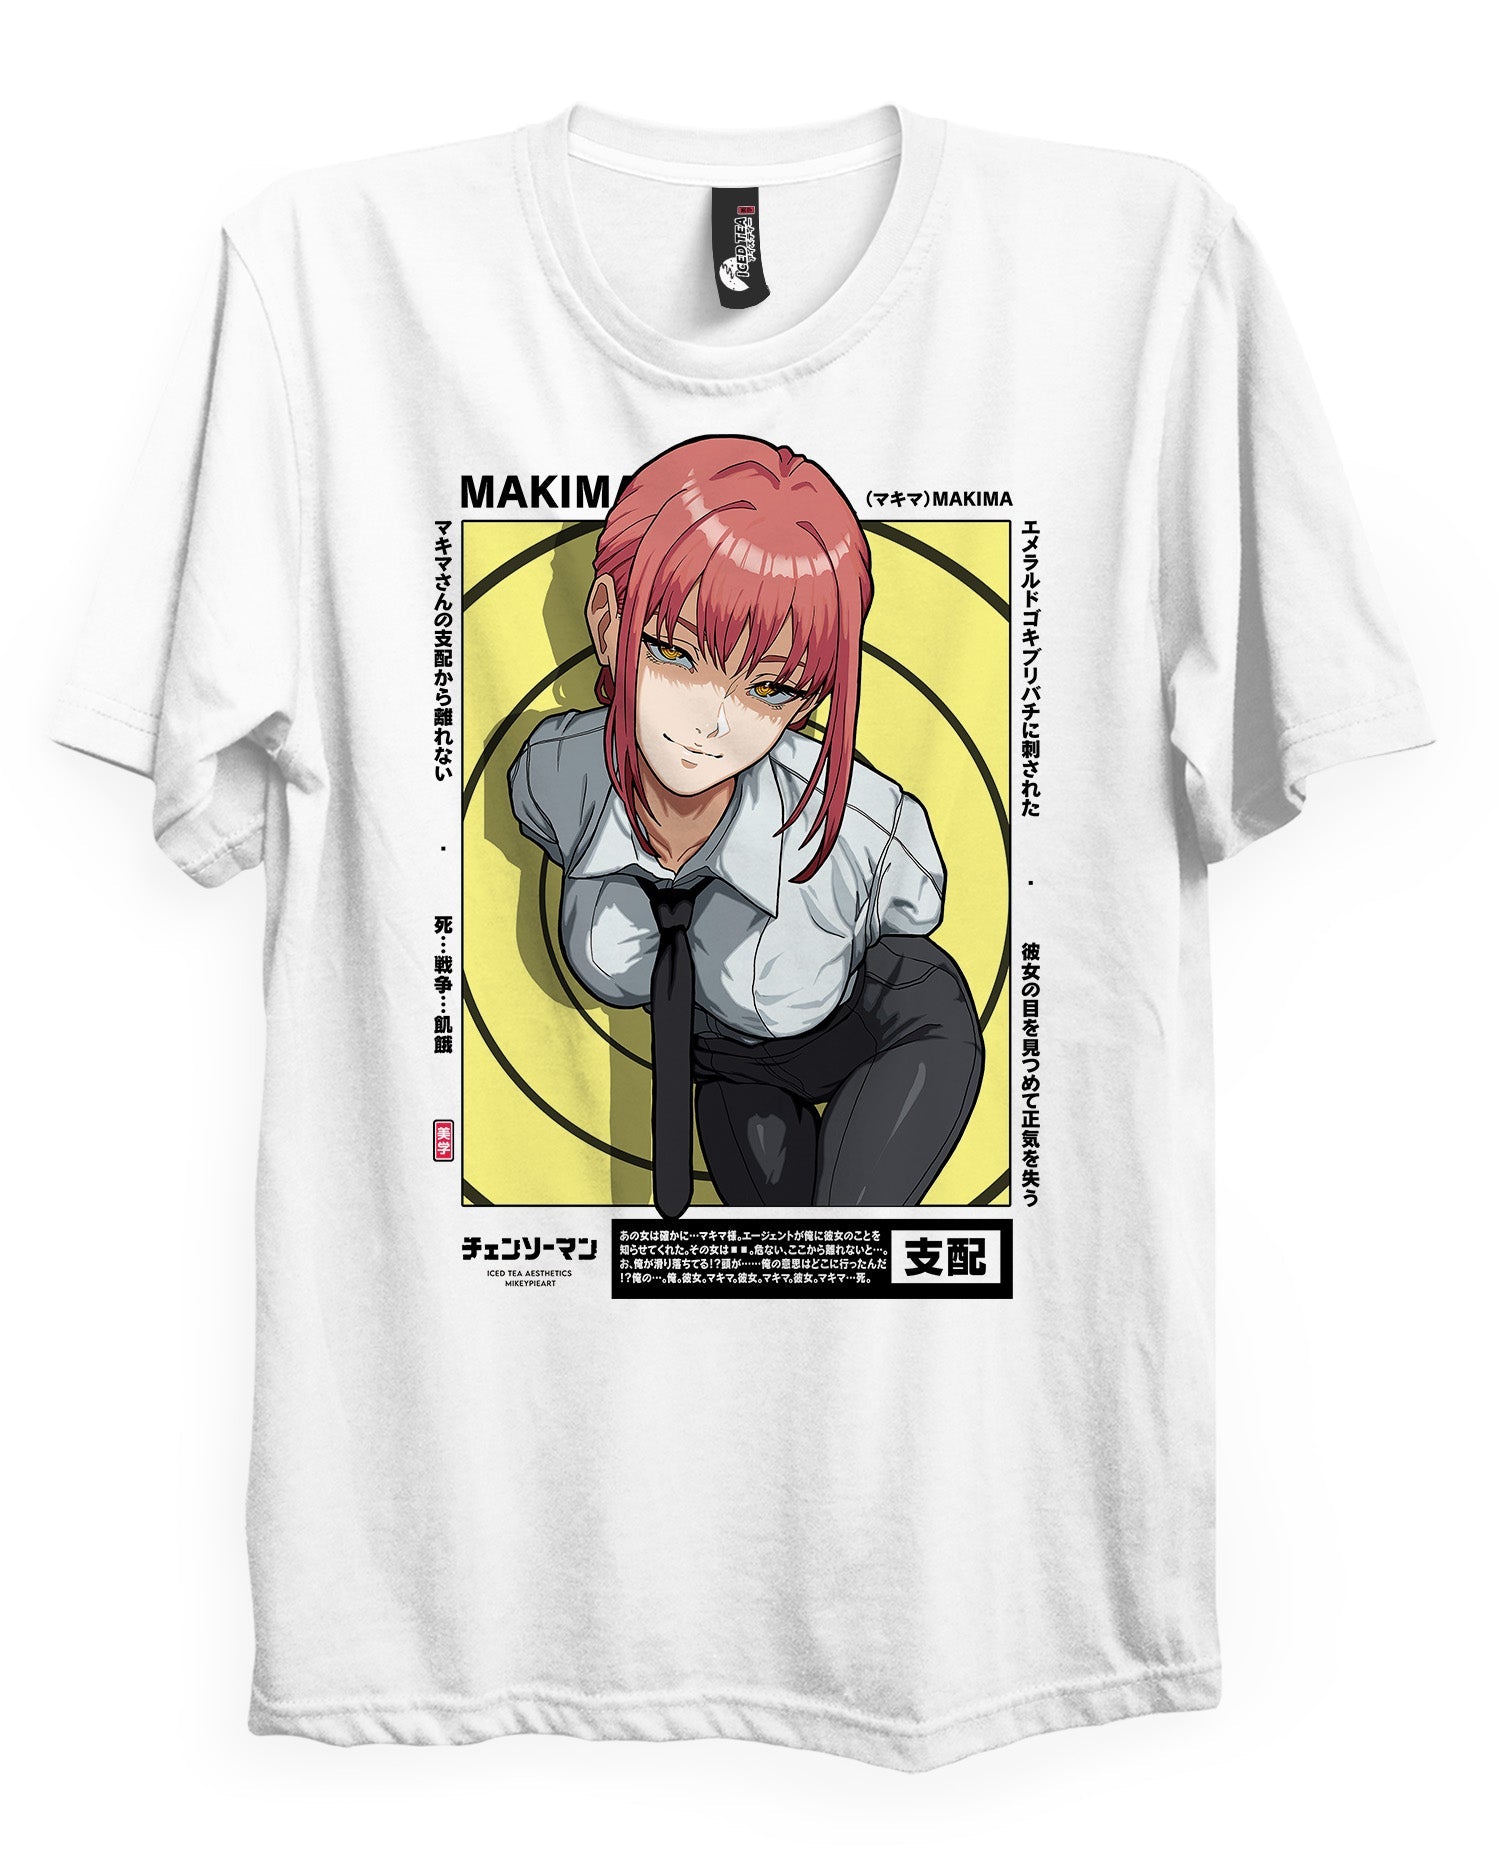 MAKIMA (EYES) - T-Shirt